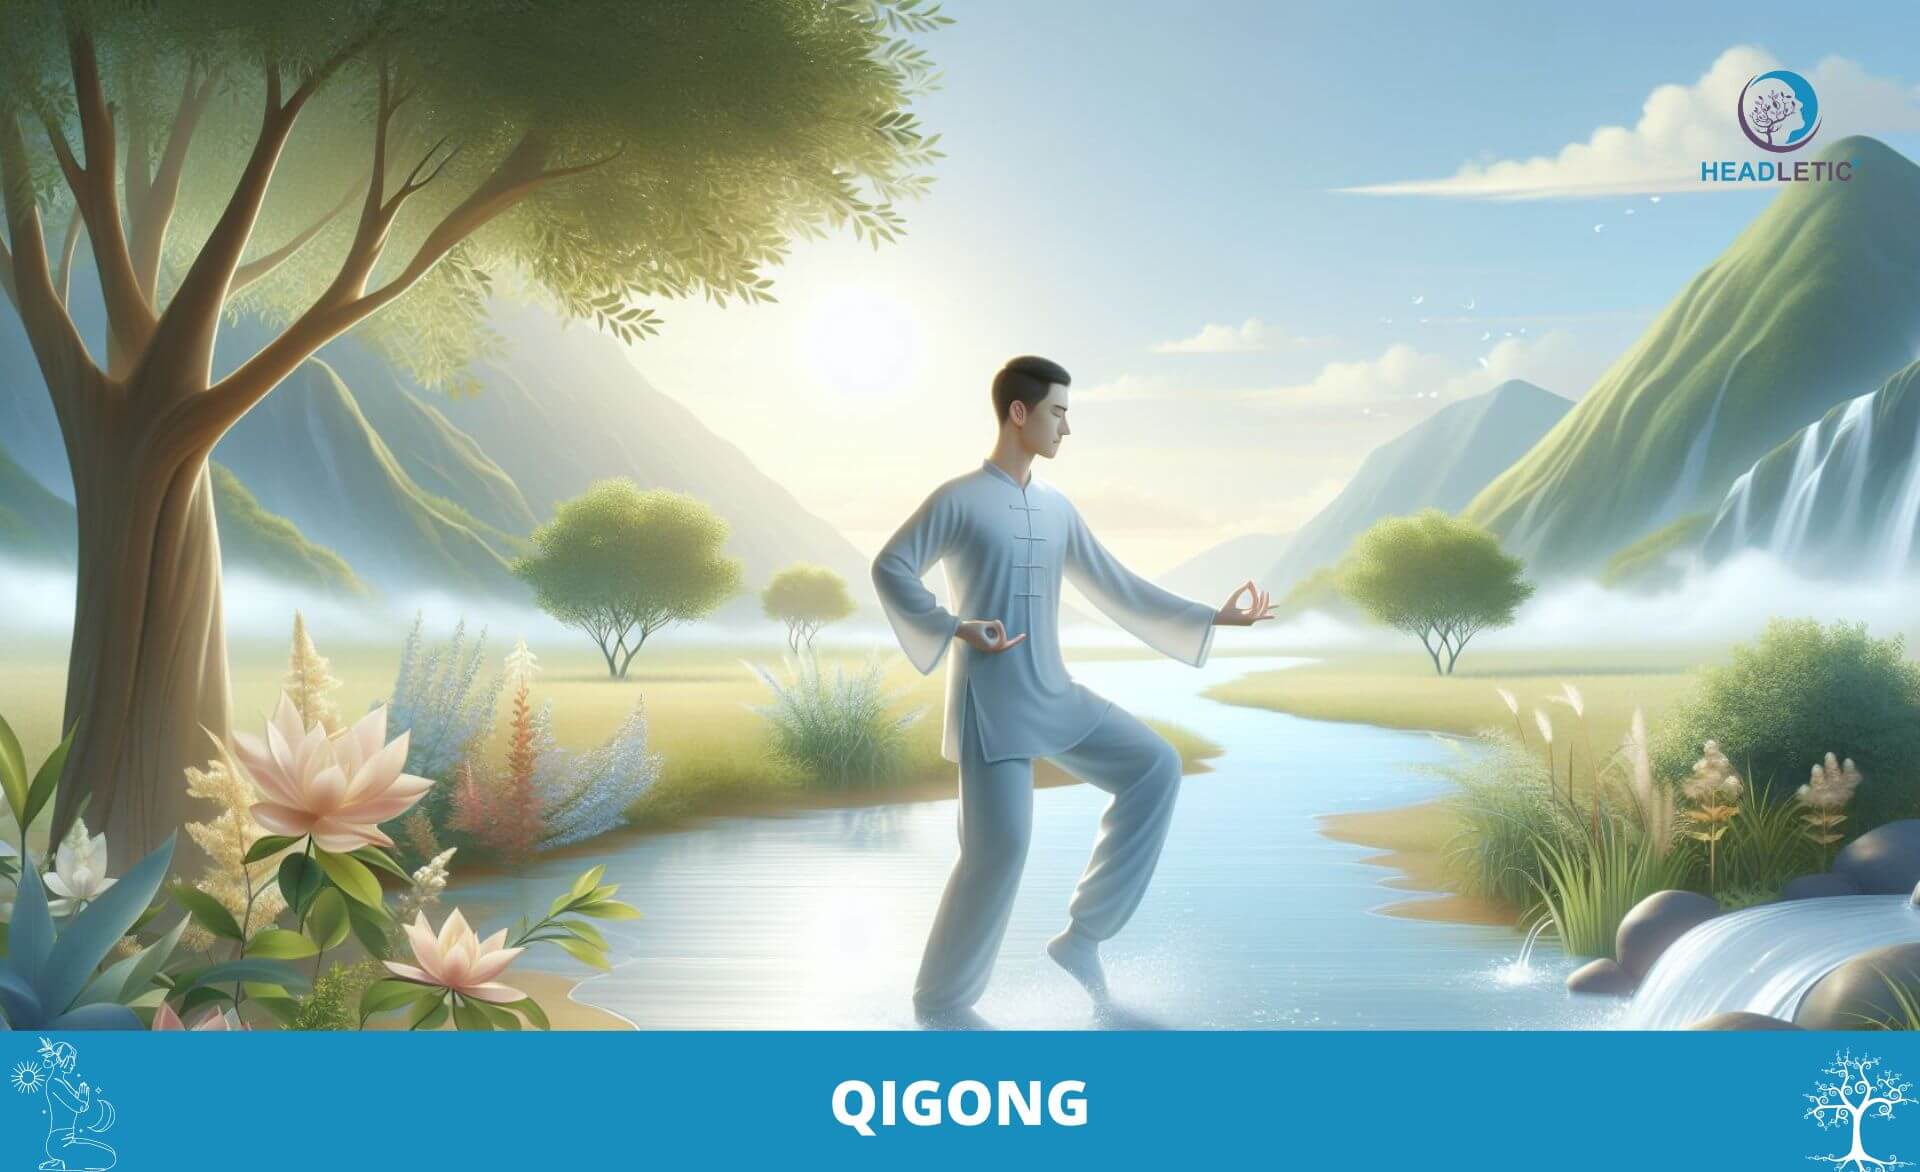 Eine Person praktiziert Qigong-Übungen in einer ruhigen Naturlandschaft mit Bergen, einem Fluss und üppigem Grün im Hintergrund. Das Bild enthält den Text „QIGONG“ und ein Logo in der oberen rechten Ecke.